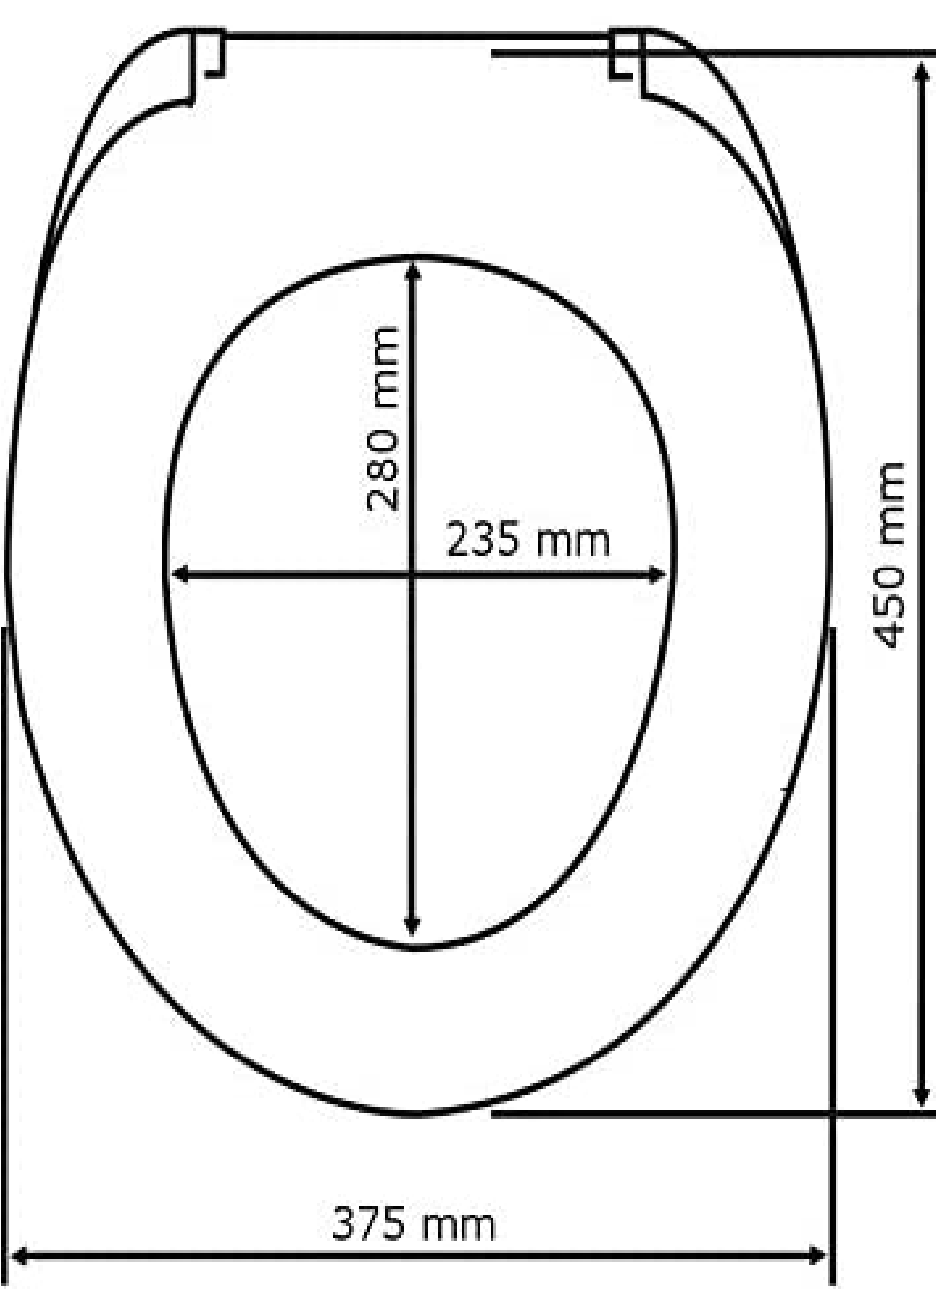 WC-Sitz Savio - Antibakterieller Toilettensitz, Easy-Close Absenkautomatik, verchromte Kunststoff-Befestigung, Duroplast, 35 x 44.5 cm, Weiß